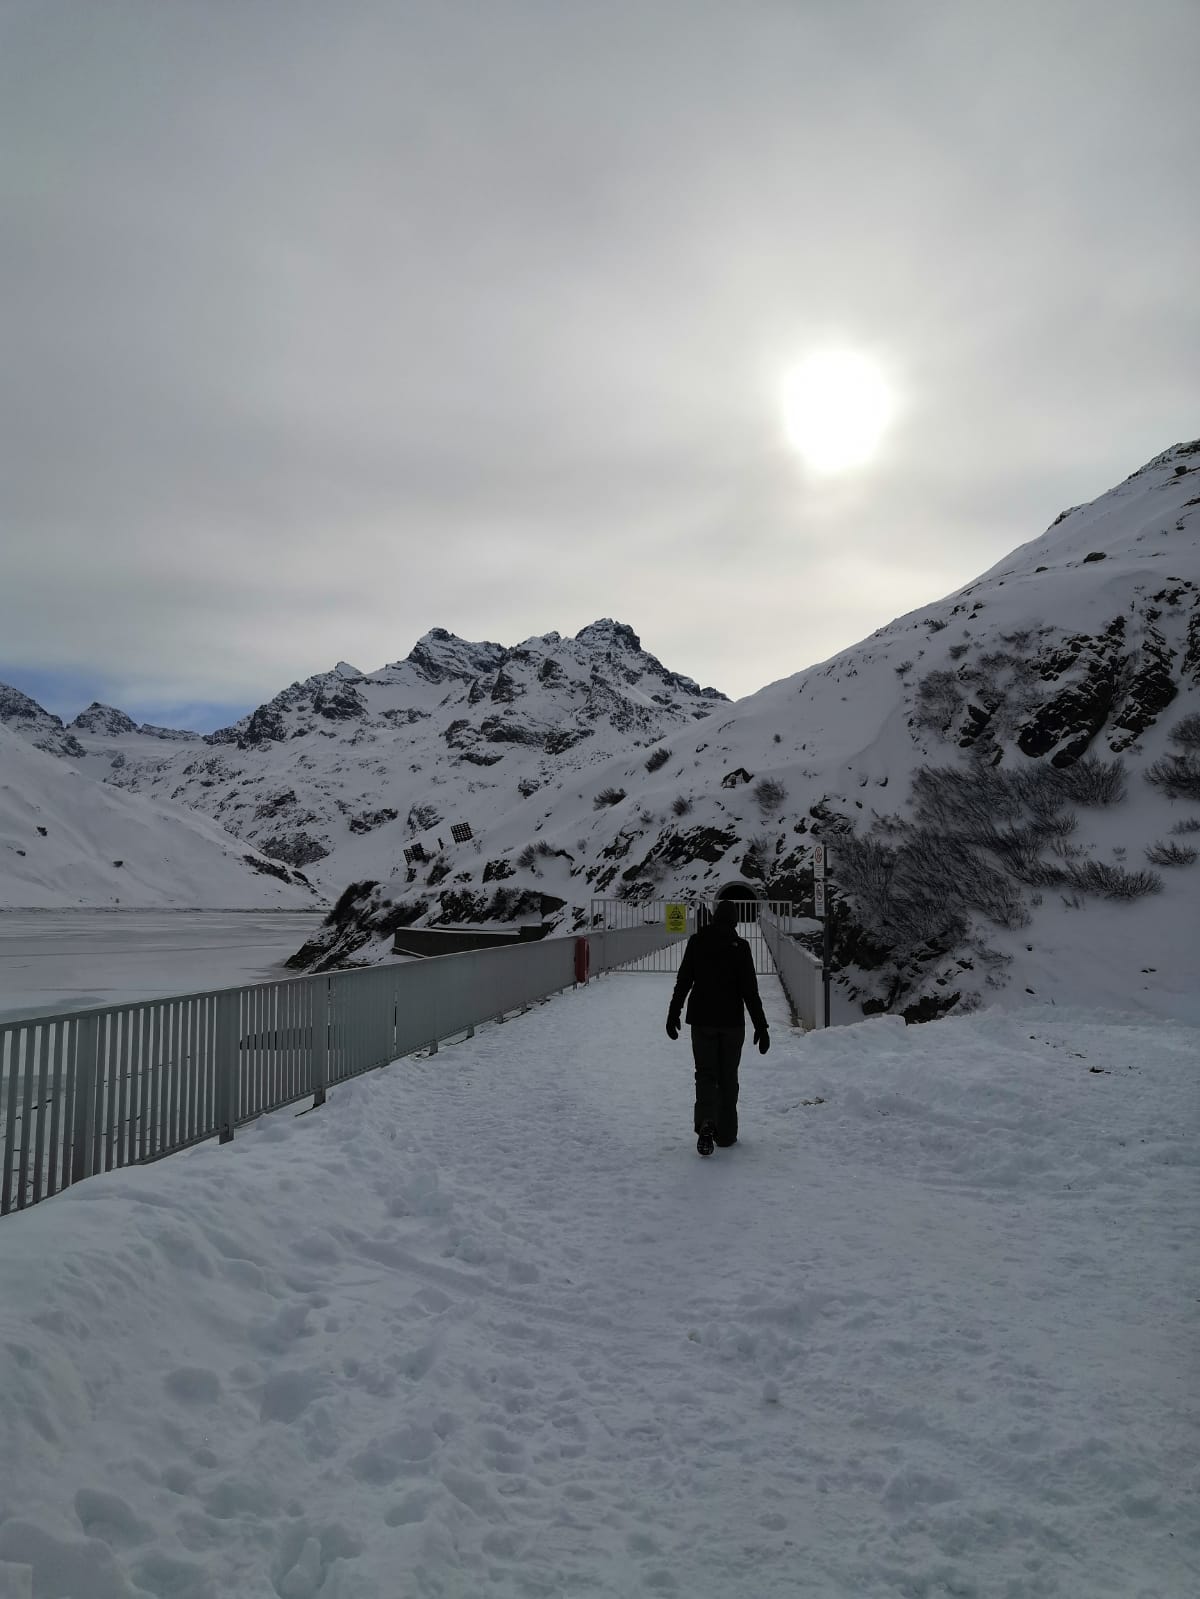 Schneeschuhwanderung zum Silvrettasee_ Winterwanderung am Silvrettasee_(c) mateoundelena